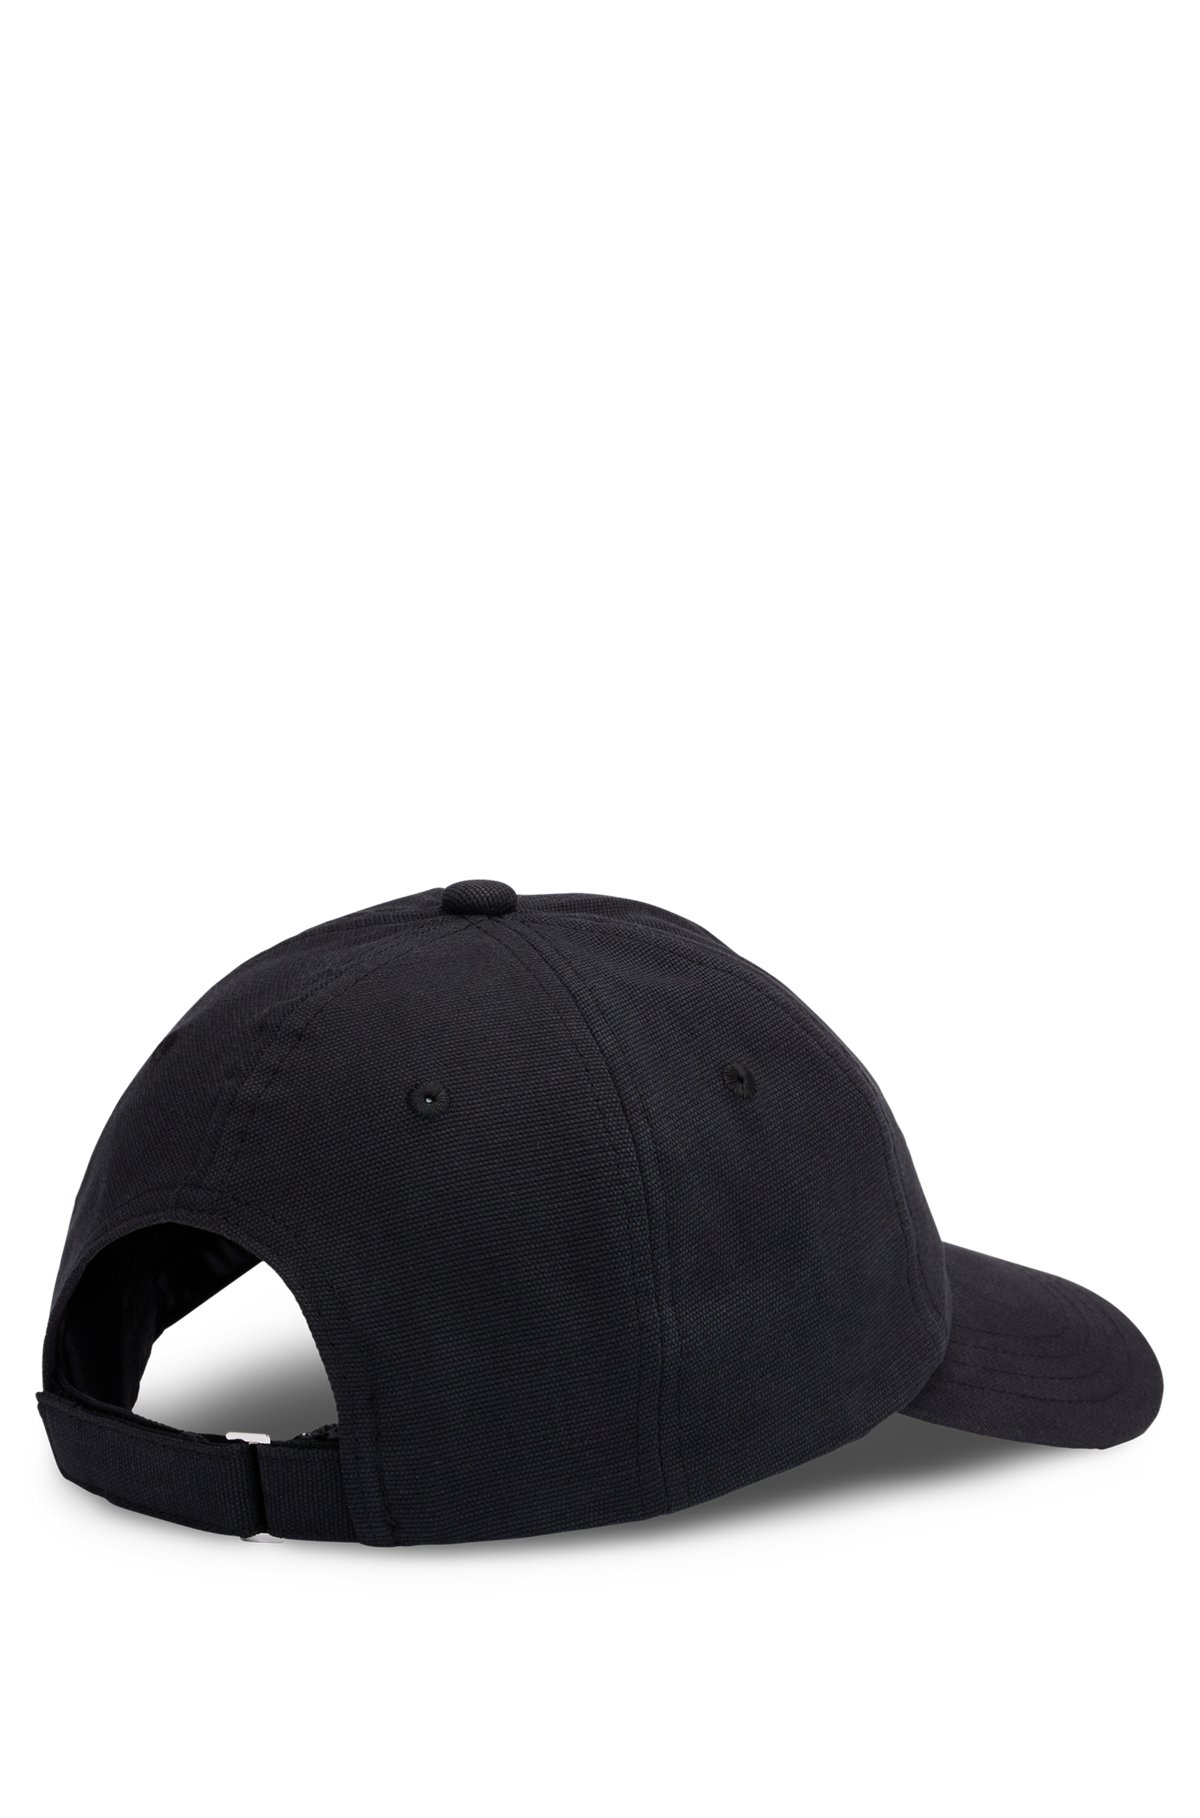 Cotton-canvas cap with logo patch, Black